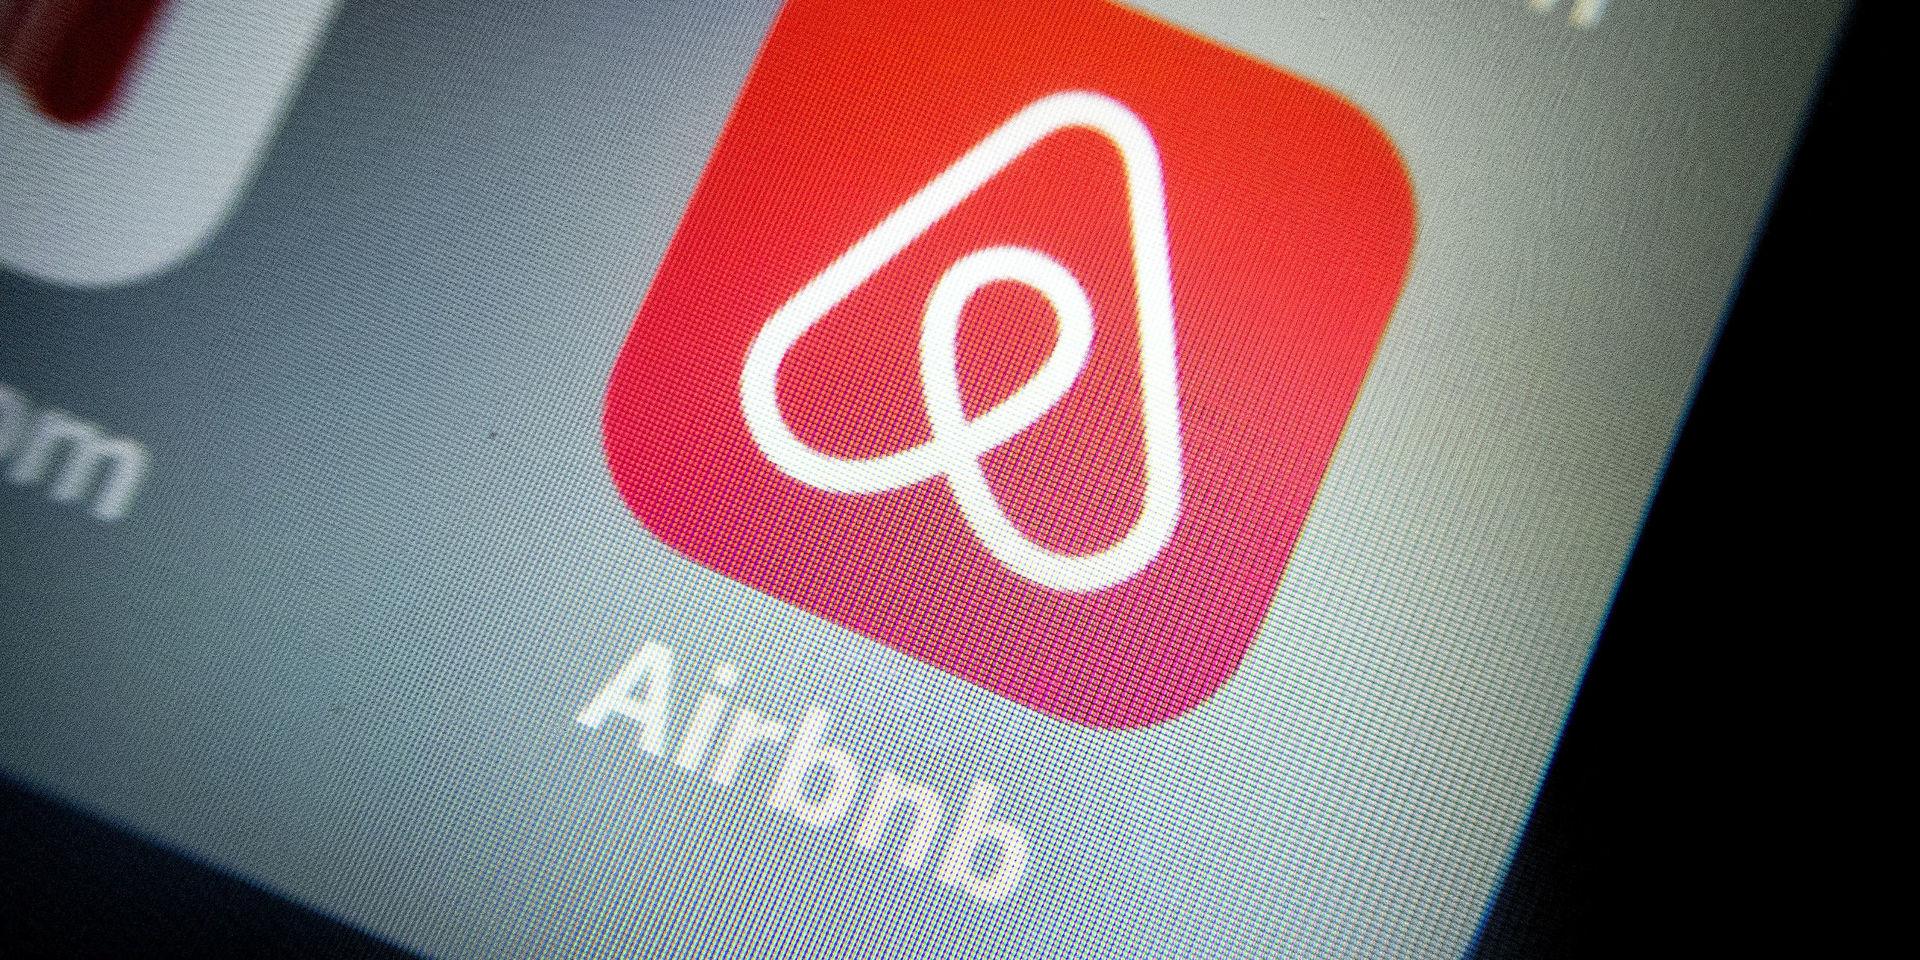 Airbnb menar att säkerhet är en högt prioriterad fråga för företaget. I ett mejl uppger företaget för GP att man därför bland annat har anställt tidigare polisutredare och andra typer av säkerhetsexperter för att motverka att lägenheter hyrs i brottsligt syfte.